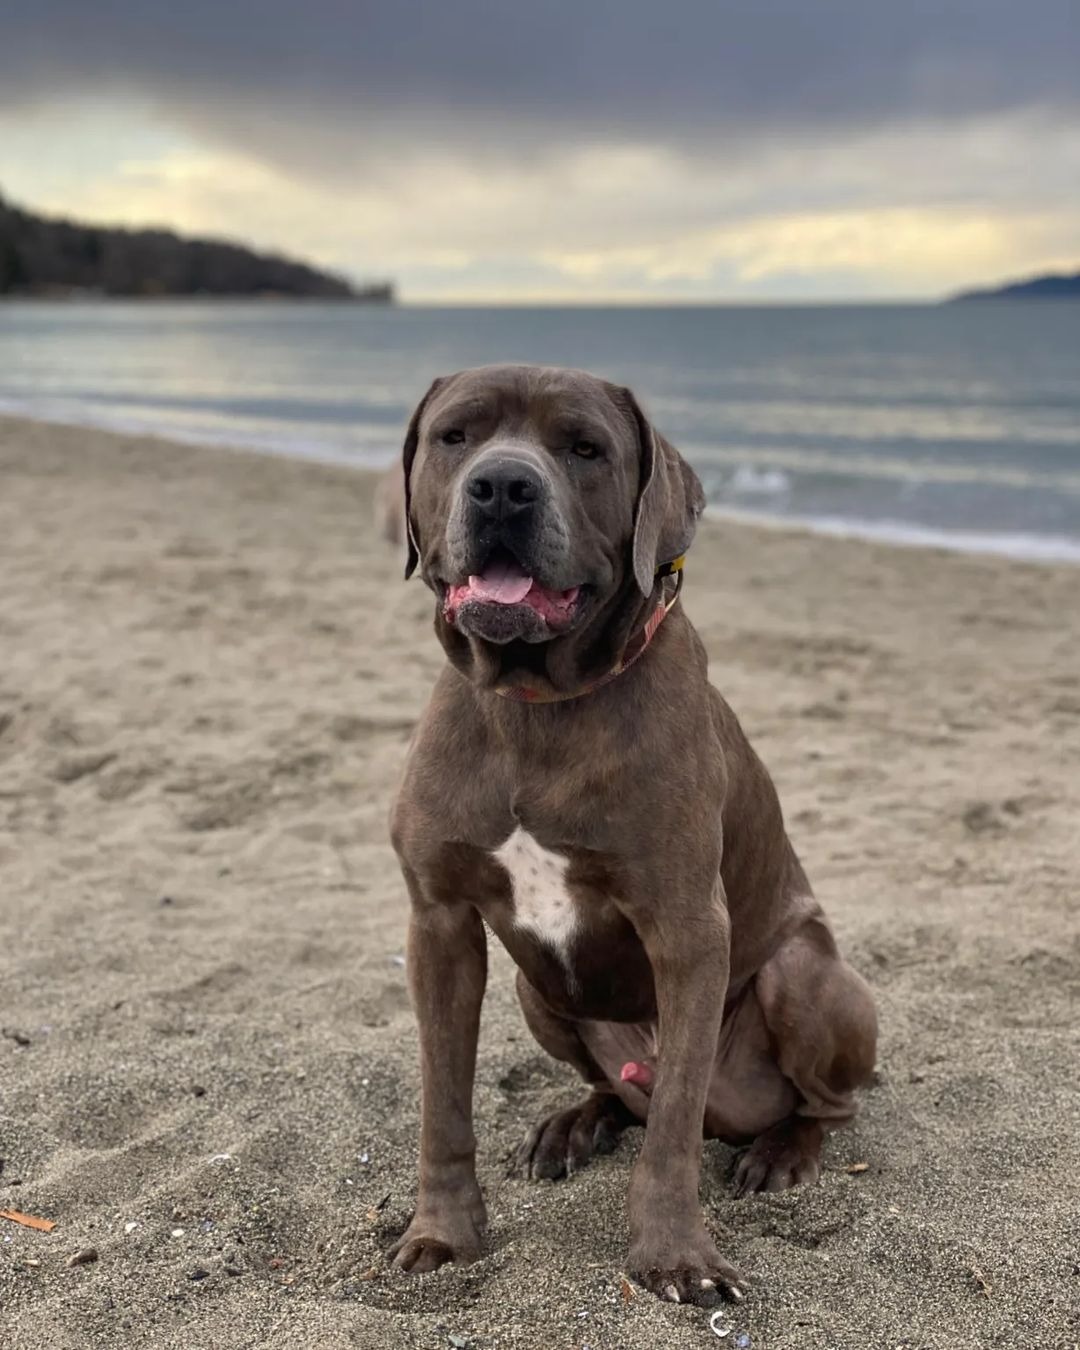 sweet dog on a beach